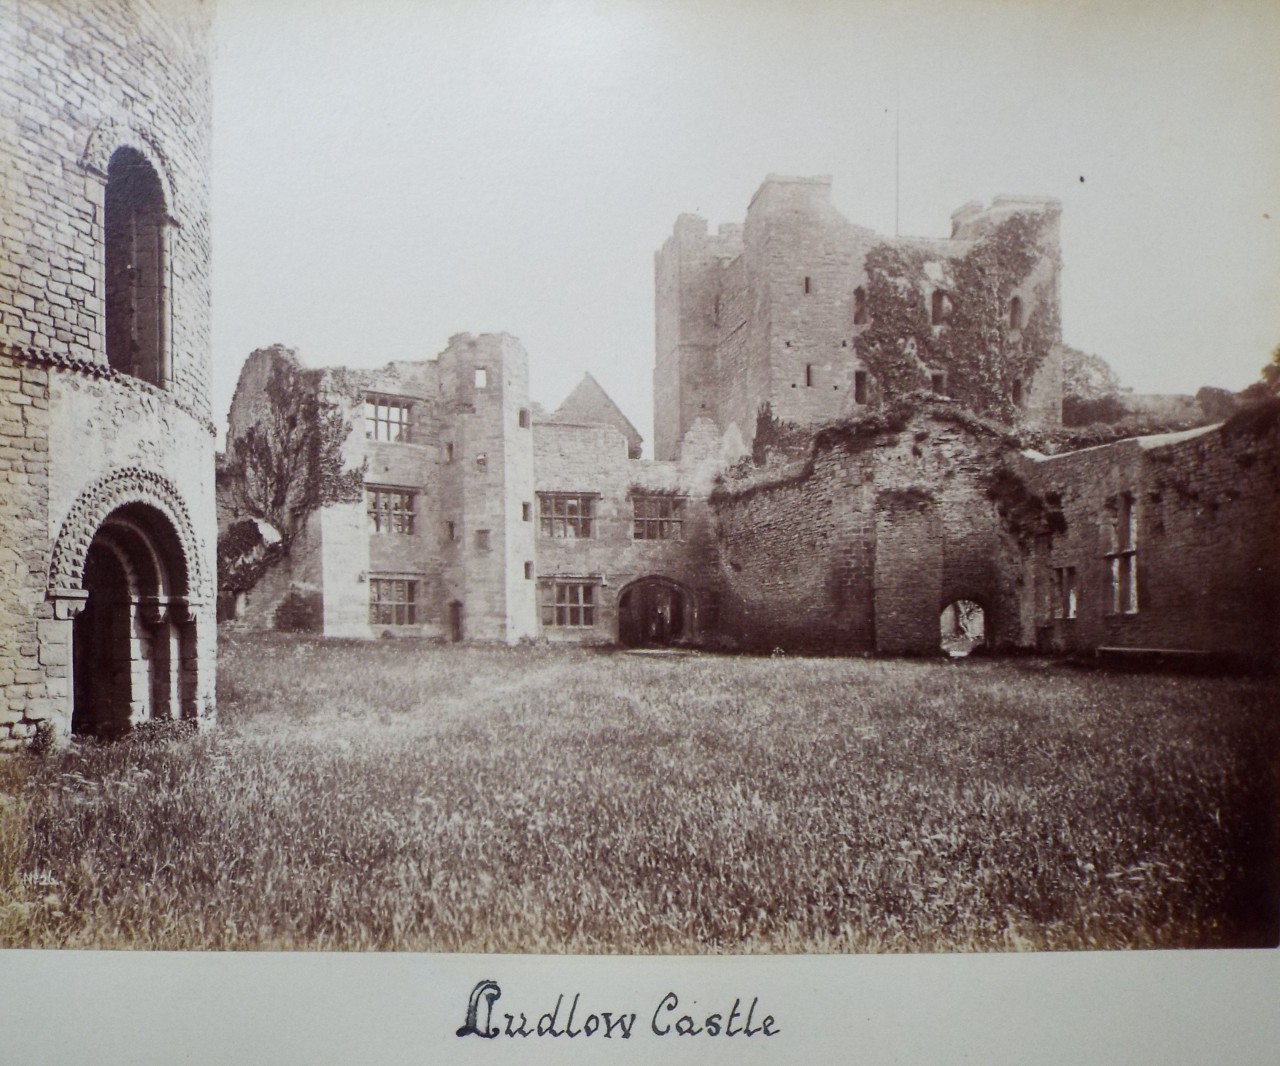 Photograph - Ludlow Castle